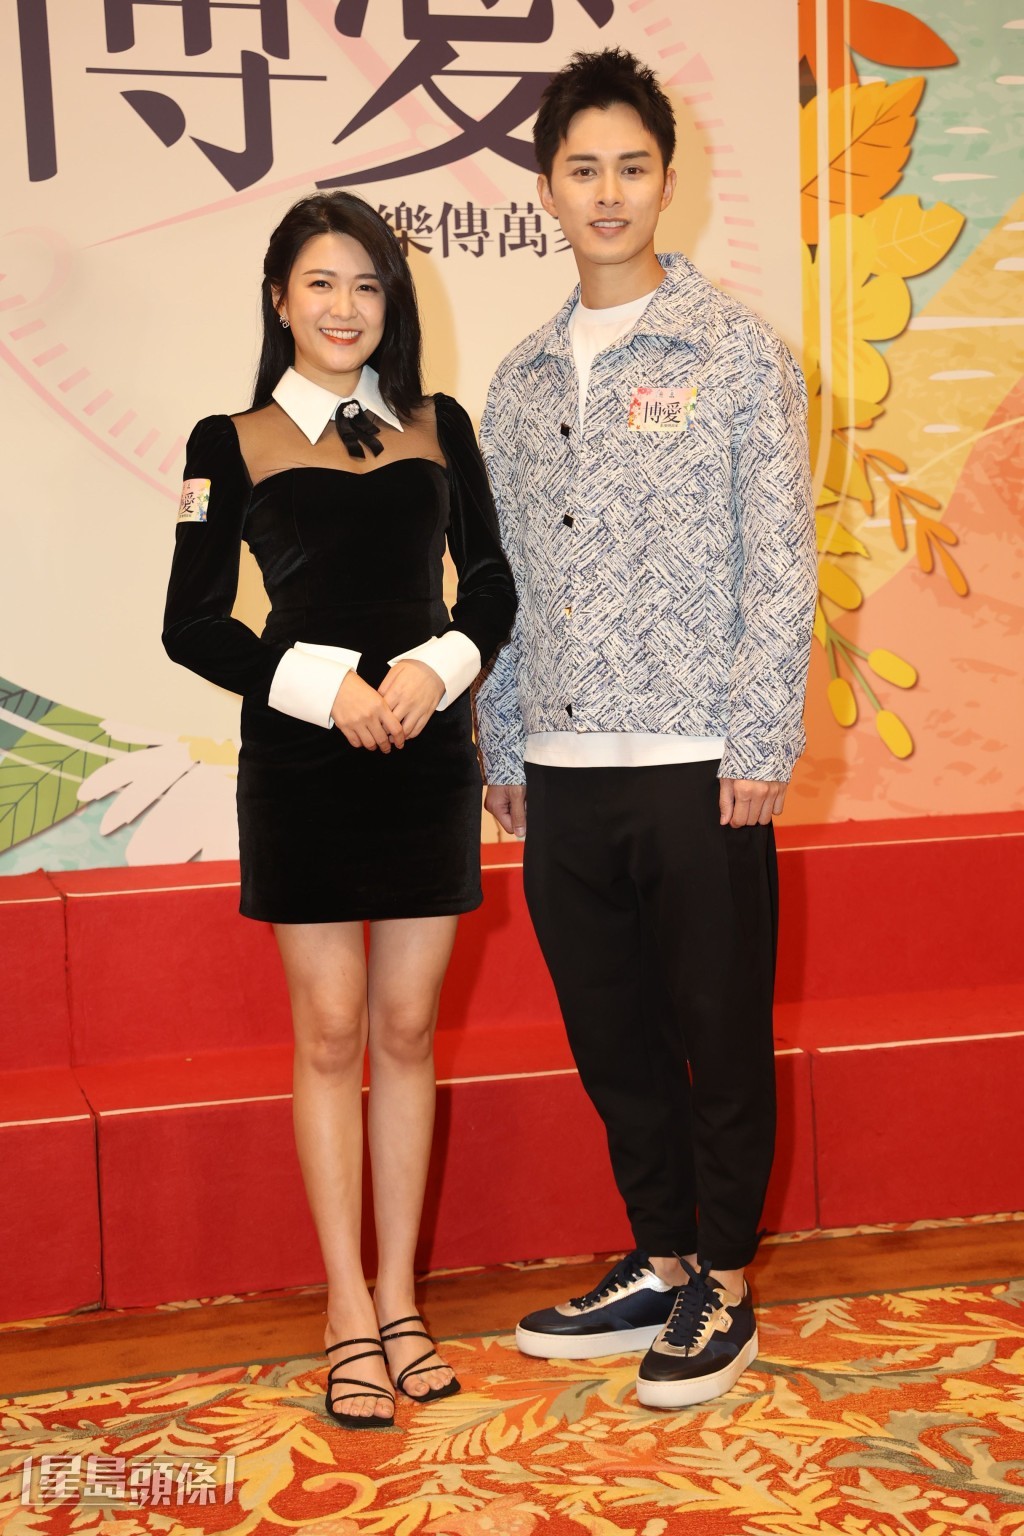 江嘉敏和何廣沛都有份在《博愛歡樂傳萬家》中表演。